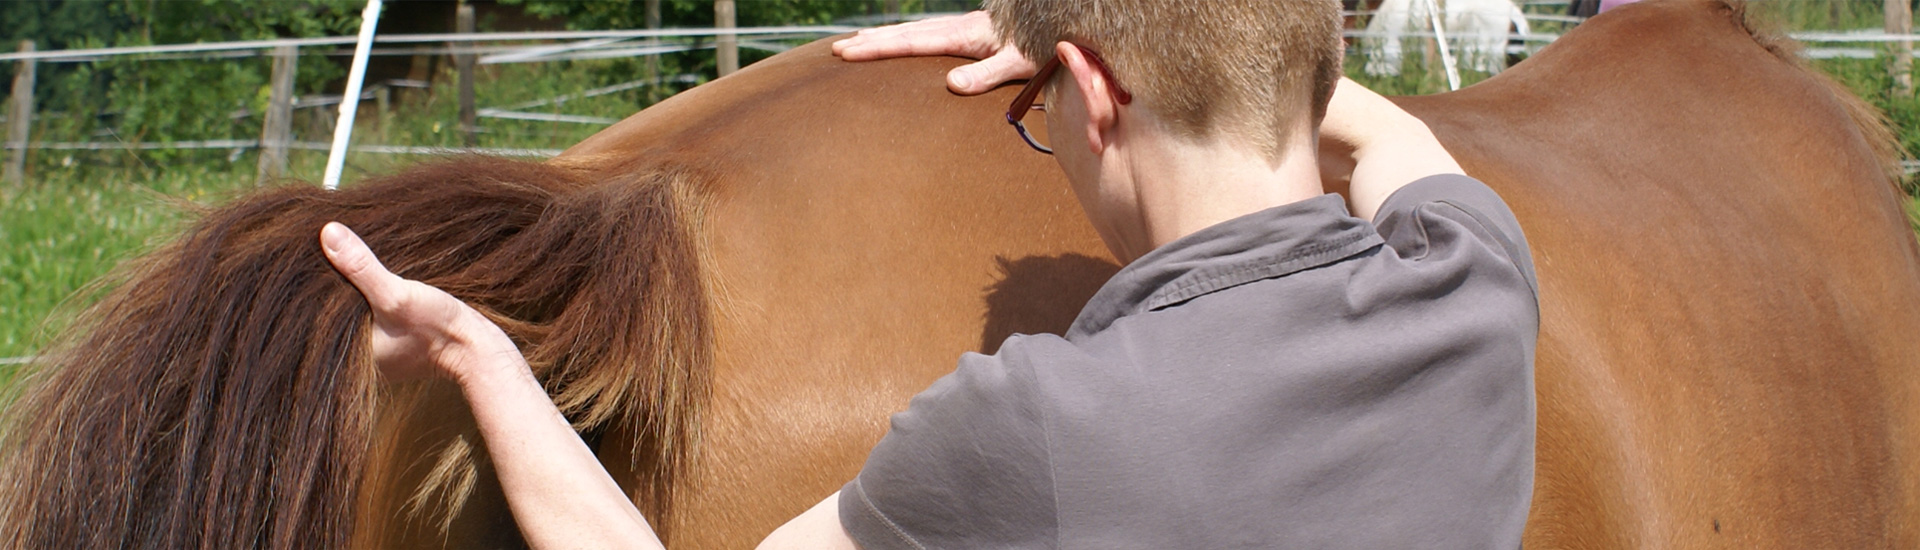 überprüfung des illiosakralgelenks beim pferd